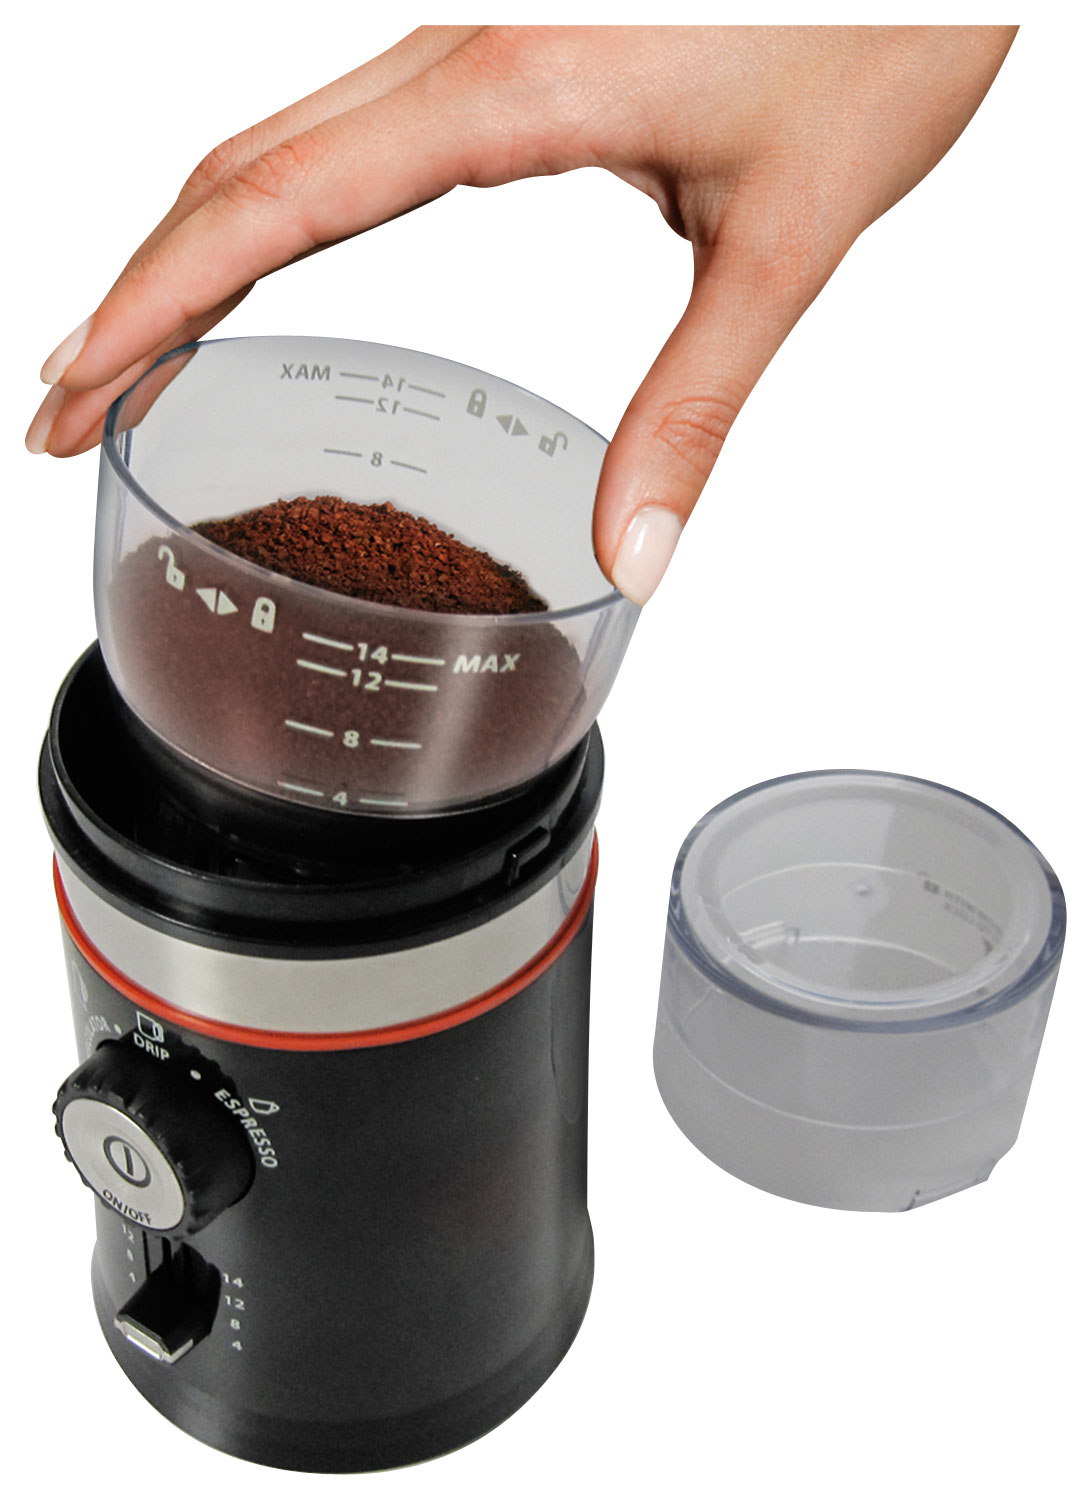 Hamilton Beach Custom Grind Coffee Grinder, 14 cups, Black, 80393F